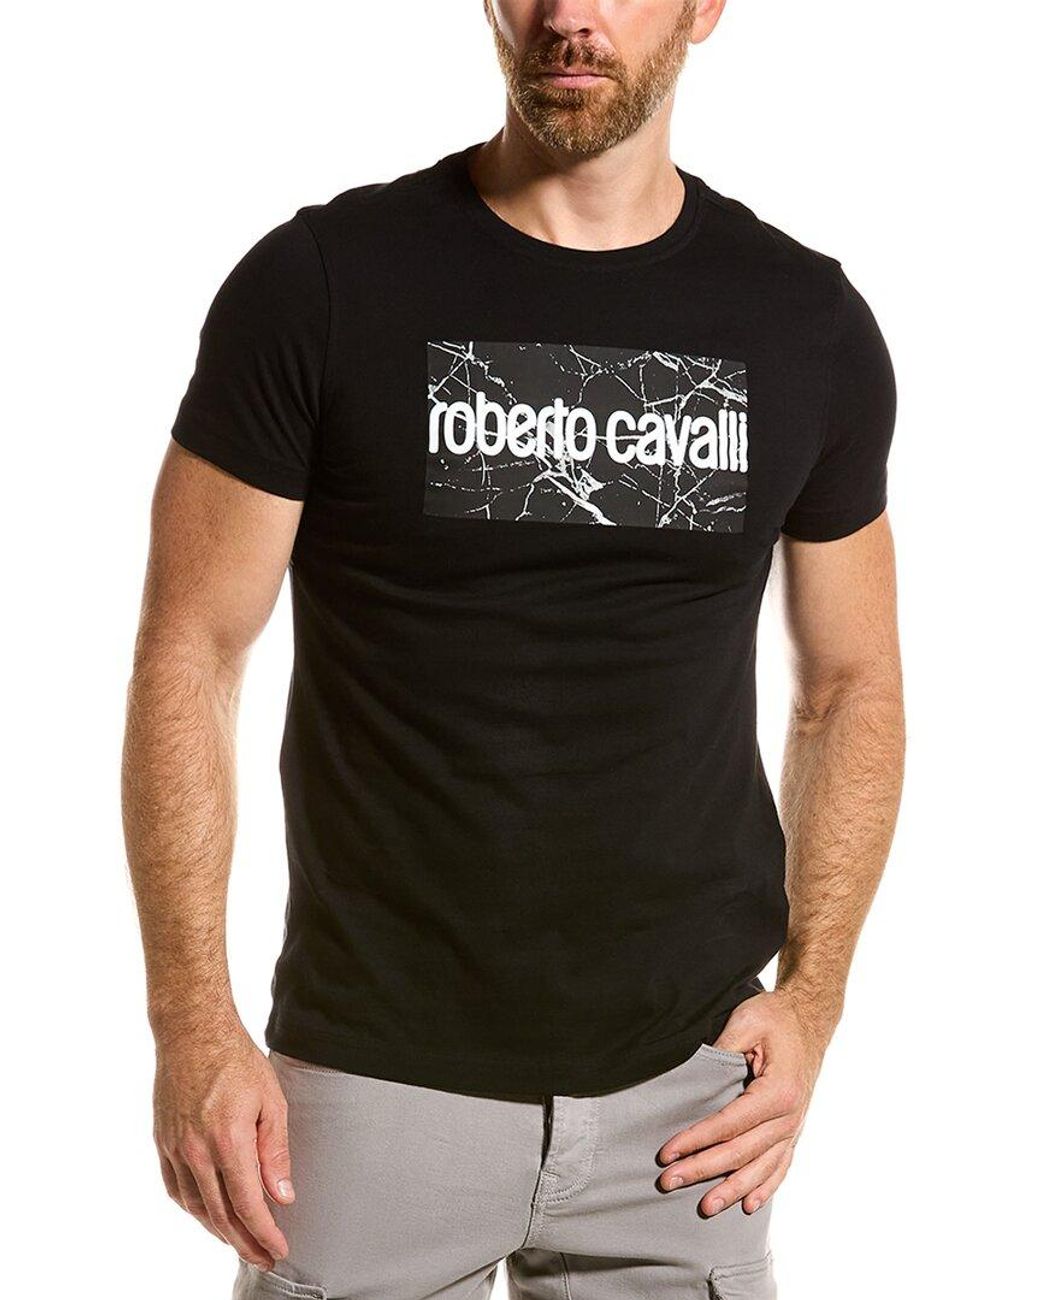 グリーン・ホワイト系 完成品♪ roberto cavalli ロベルトカヴァリ Tシャツ メンズ トップス REGULAR FIT Print  T-shirt black 通販